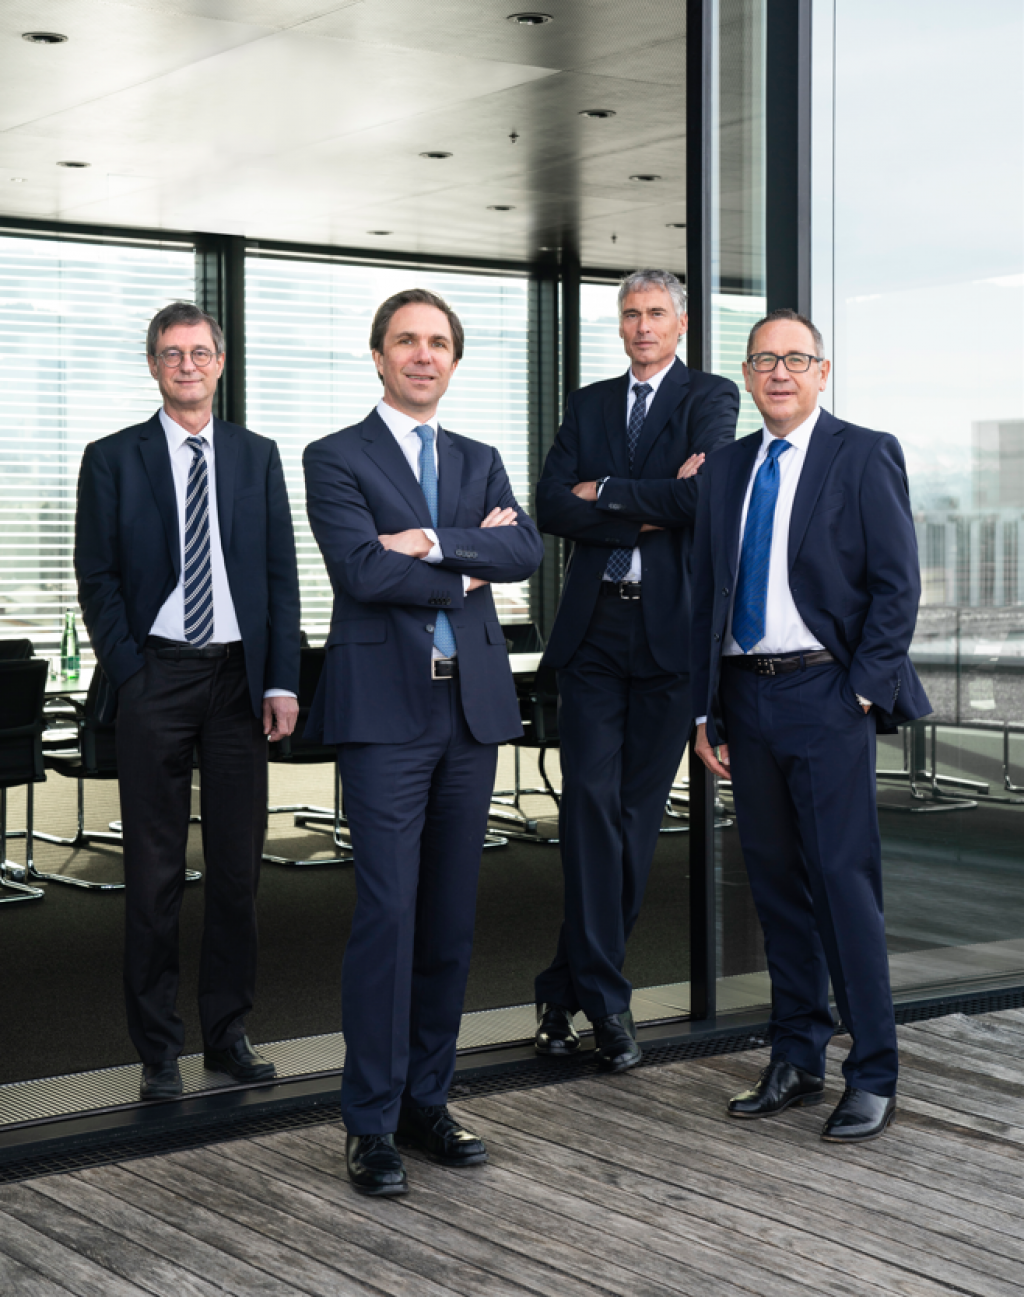 The Managing Directors of Gebrüder Weiss: Peter Kloiber, Wolfram Senger-Weiss, Lothar Thoma and Jürgen Bauer